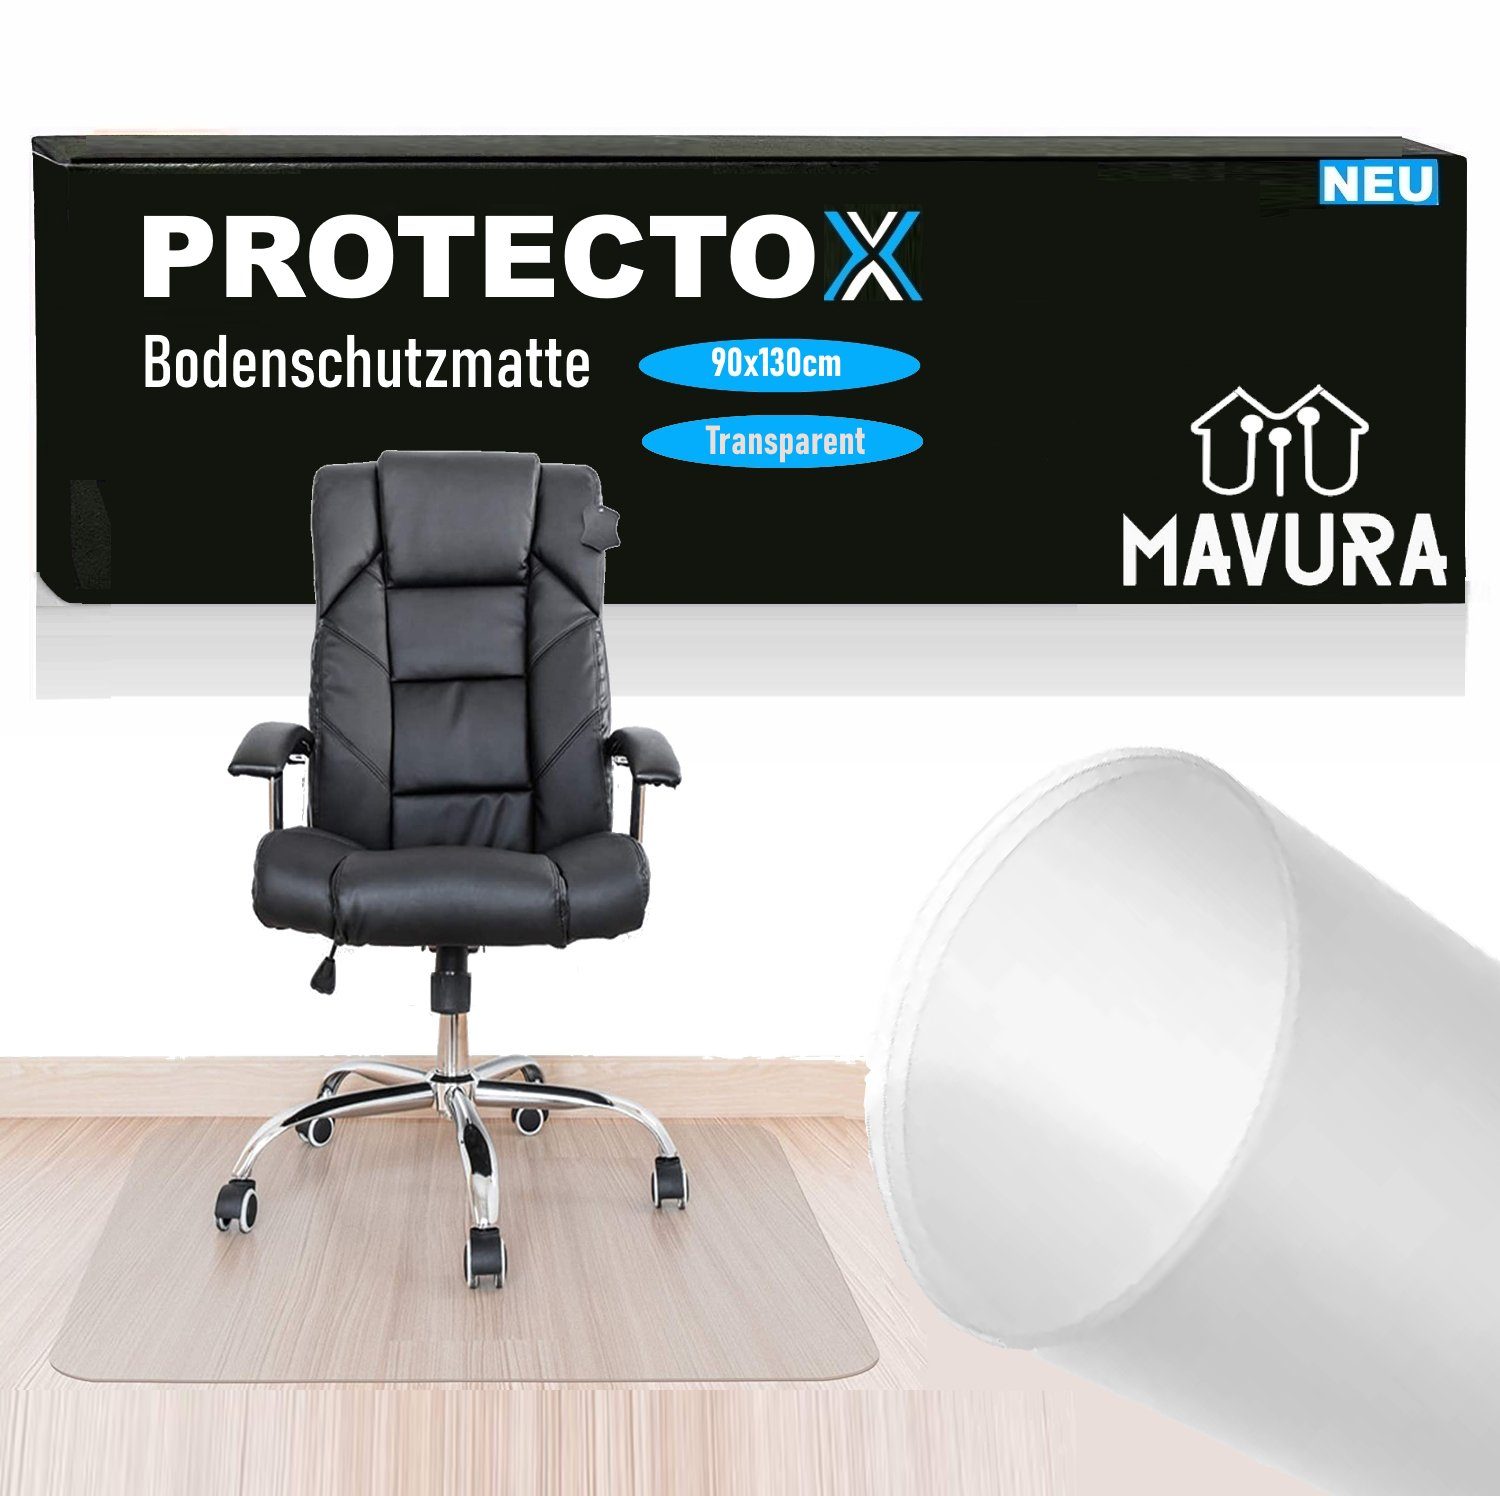 Bodenschutzmatte Fußbodenschutz, MAVURA Antirutsch 90x130cm Stuhlmatte Unterlage Bürostuhl Kratzfest & Transparent PROTECTOX